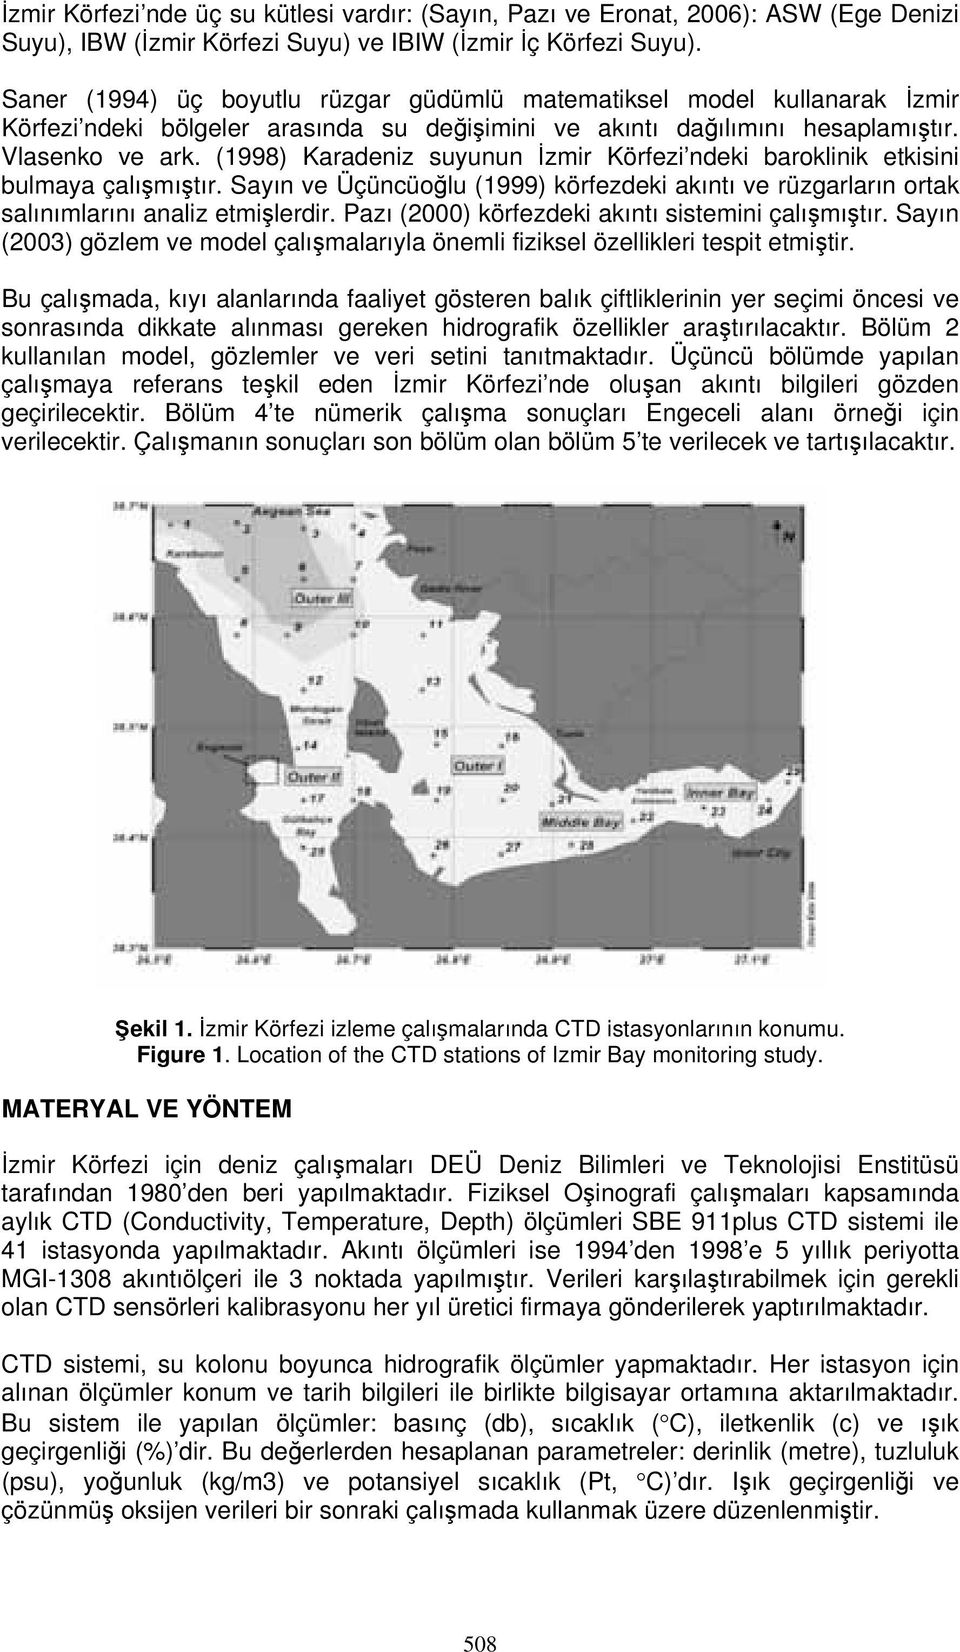 (1998) Karadeniz suyunun İzmir Körfezi ndeki baroklinik etkisini bulmaya çalışmıştır. Sayın ve Üçüncüoğlu (1999) körfezdeki akıntı ve rüzgarların ortak salınımlarını analiz etmişlerdir.